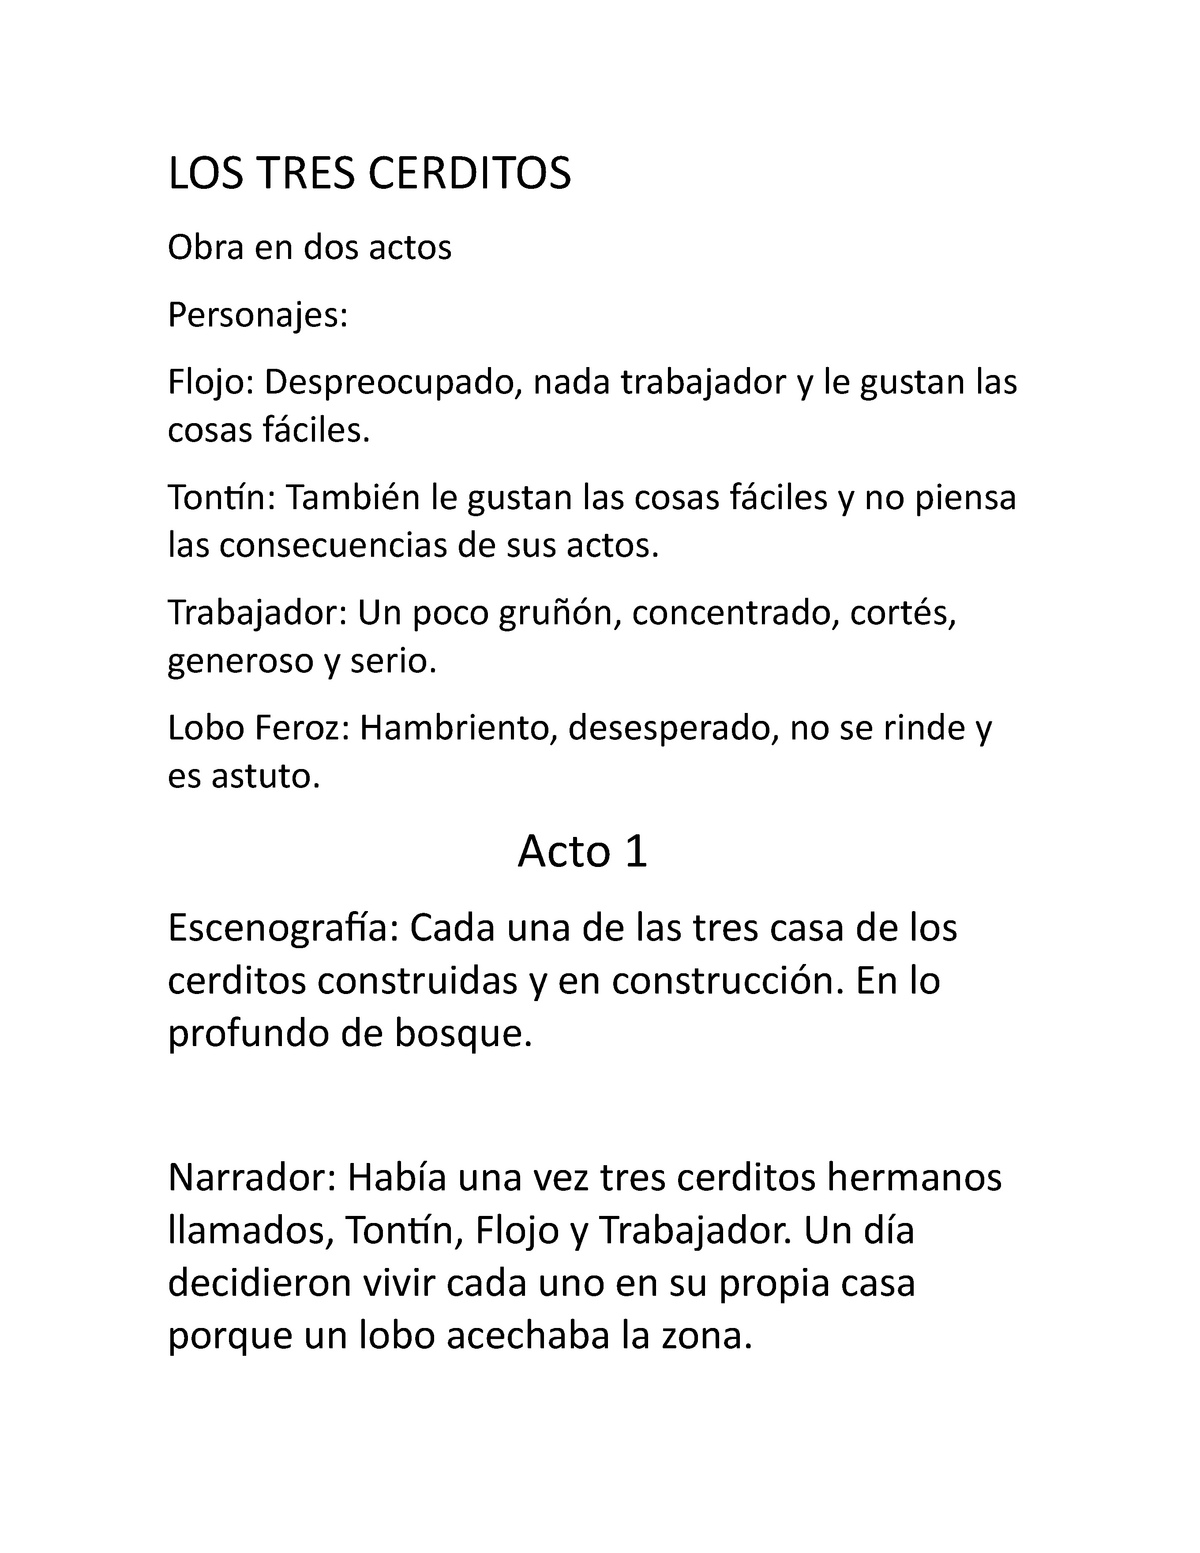 LOS TRES Cerditos obra de teatro en español completa - LOS TRES CERDITOS  Obra en dos actos - Studocu